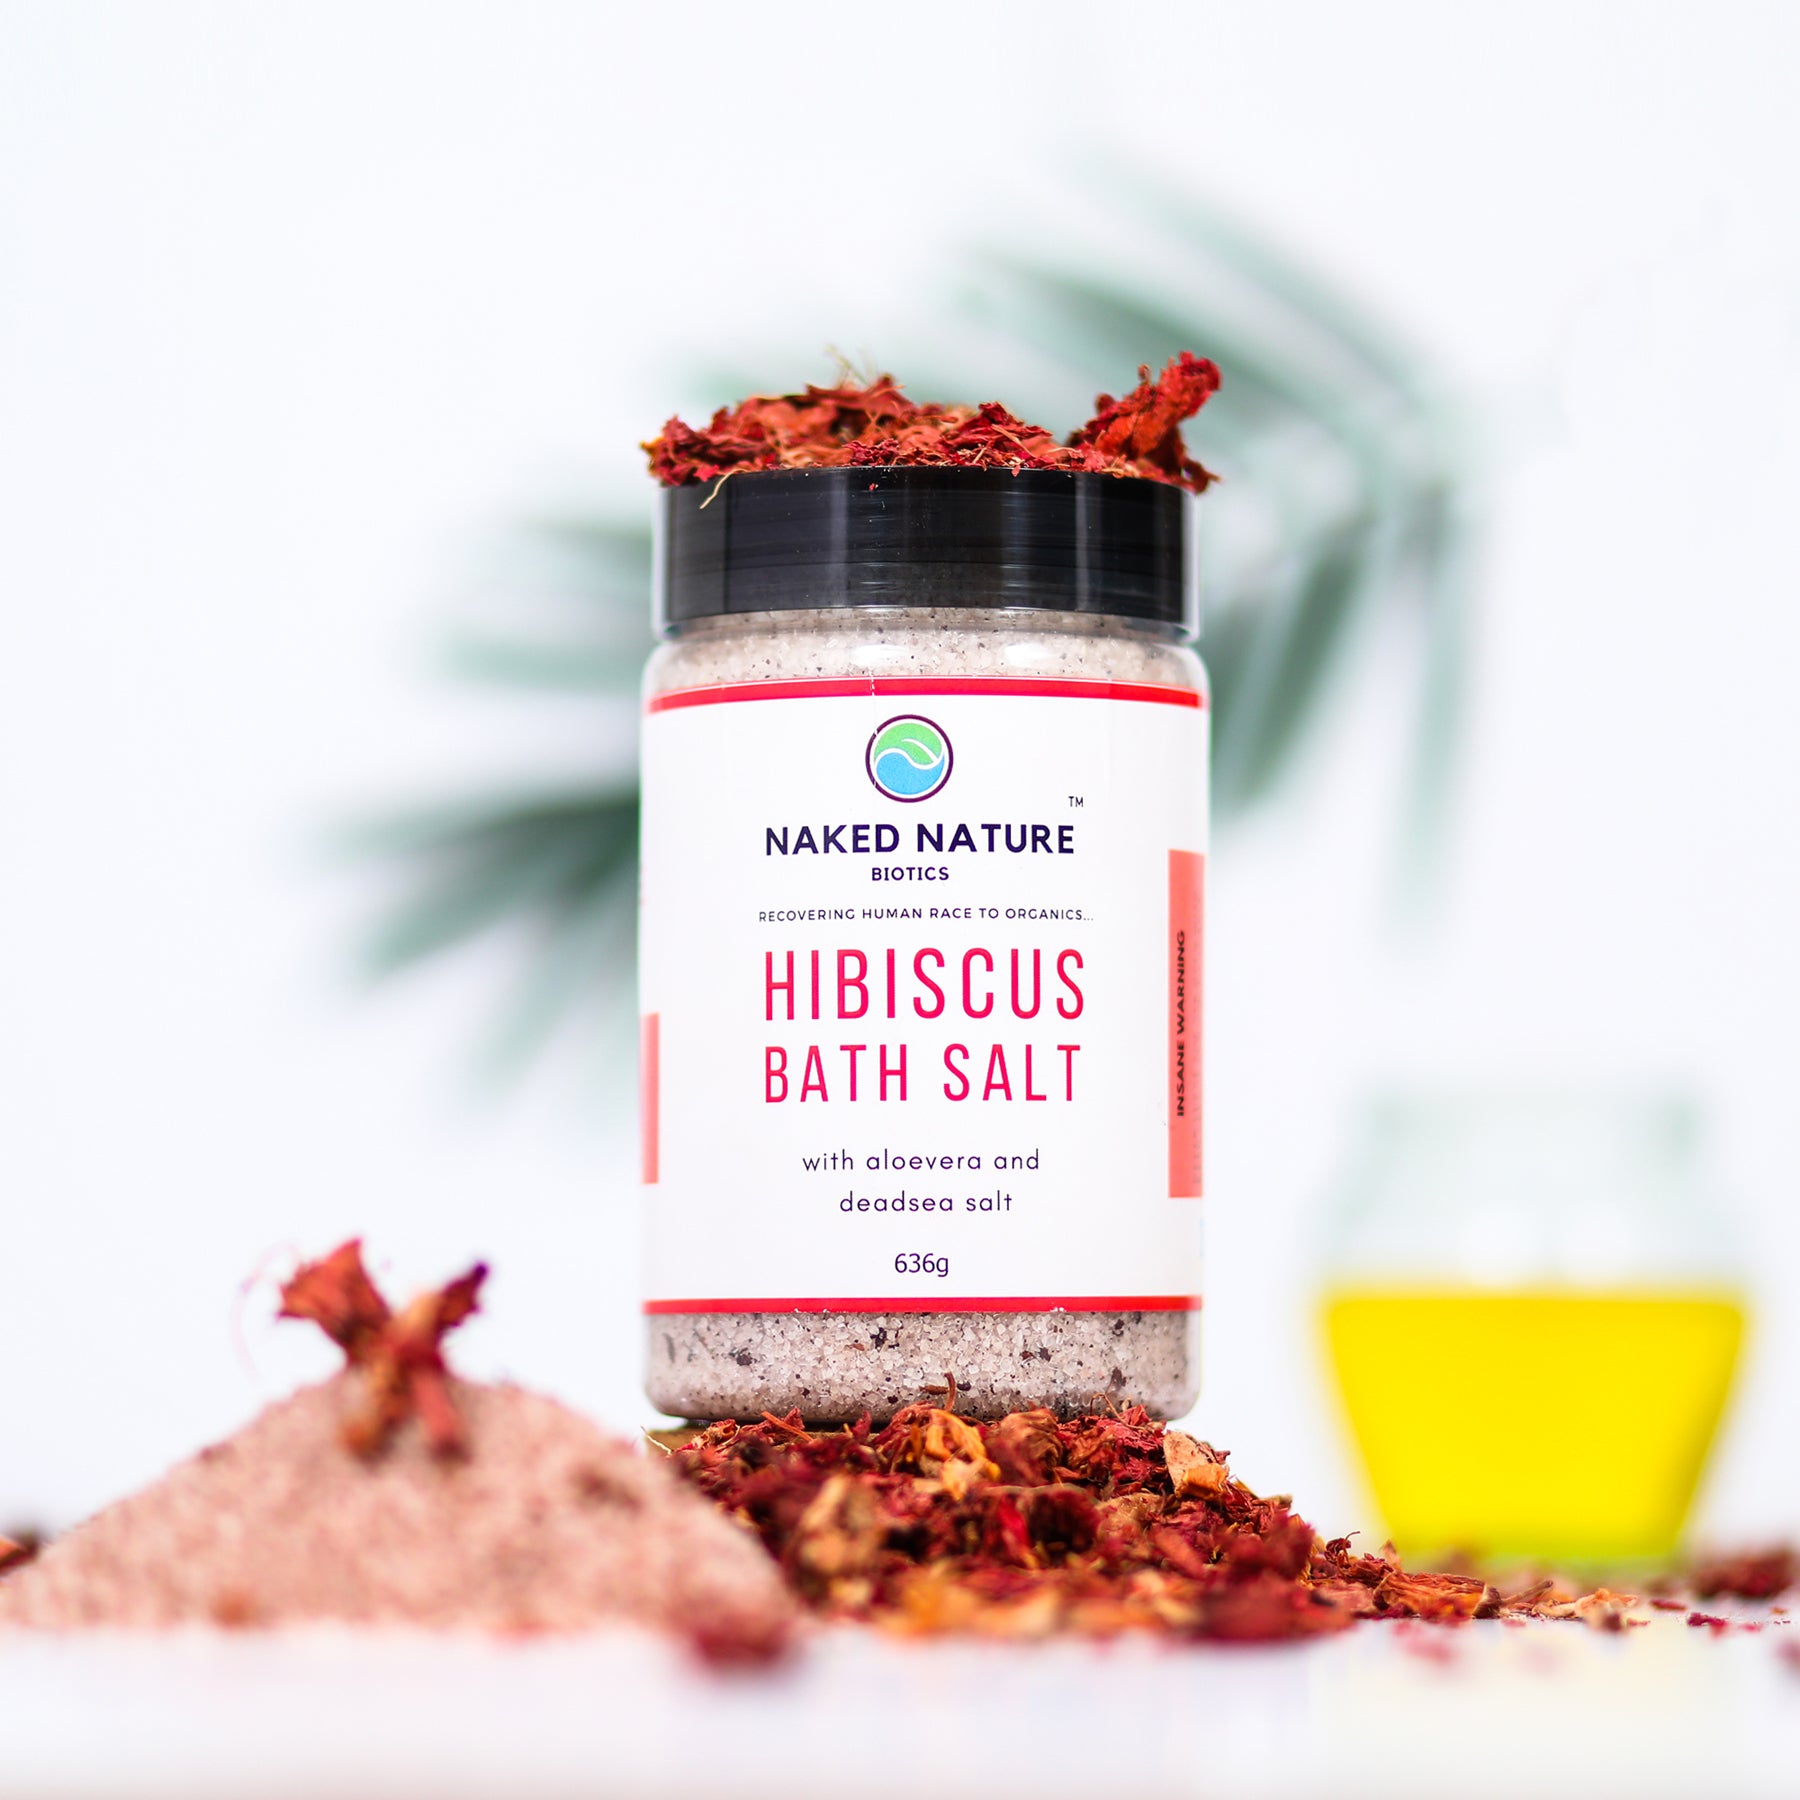 Hibiscus Bath Salt (636G)